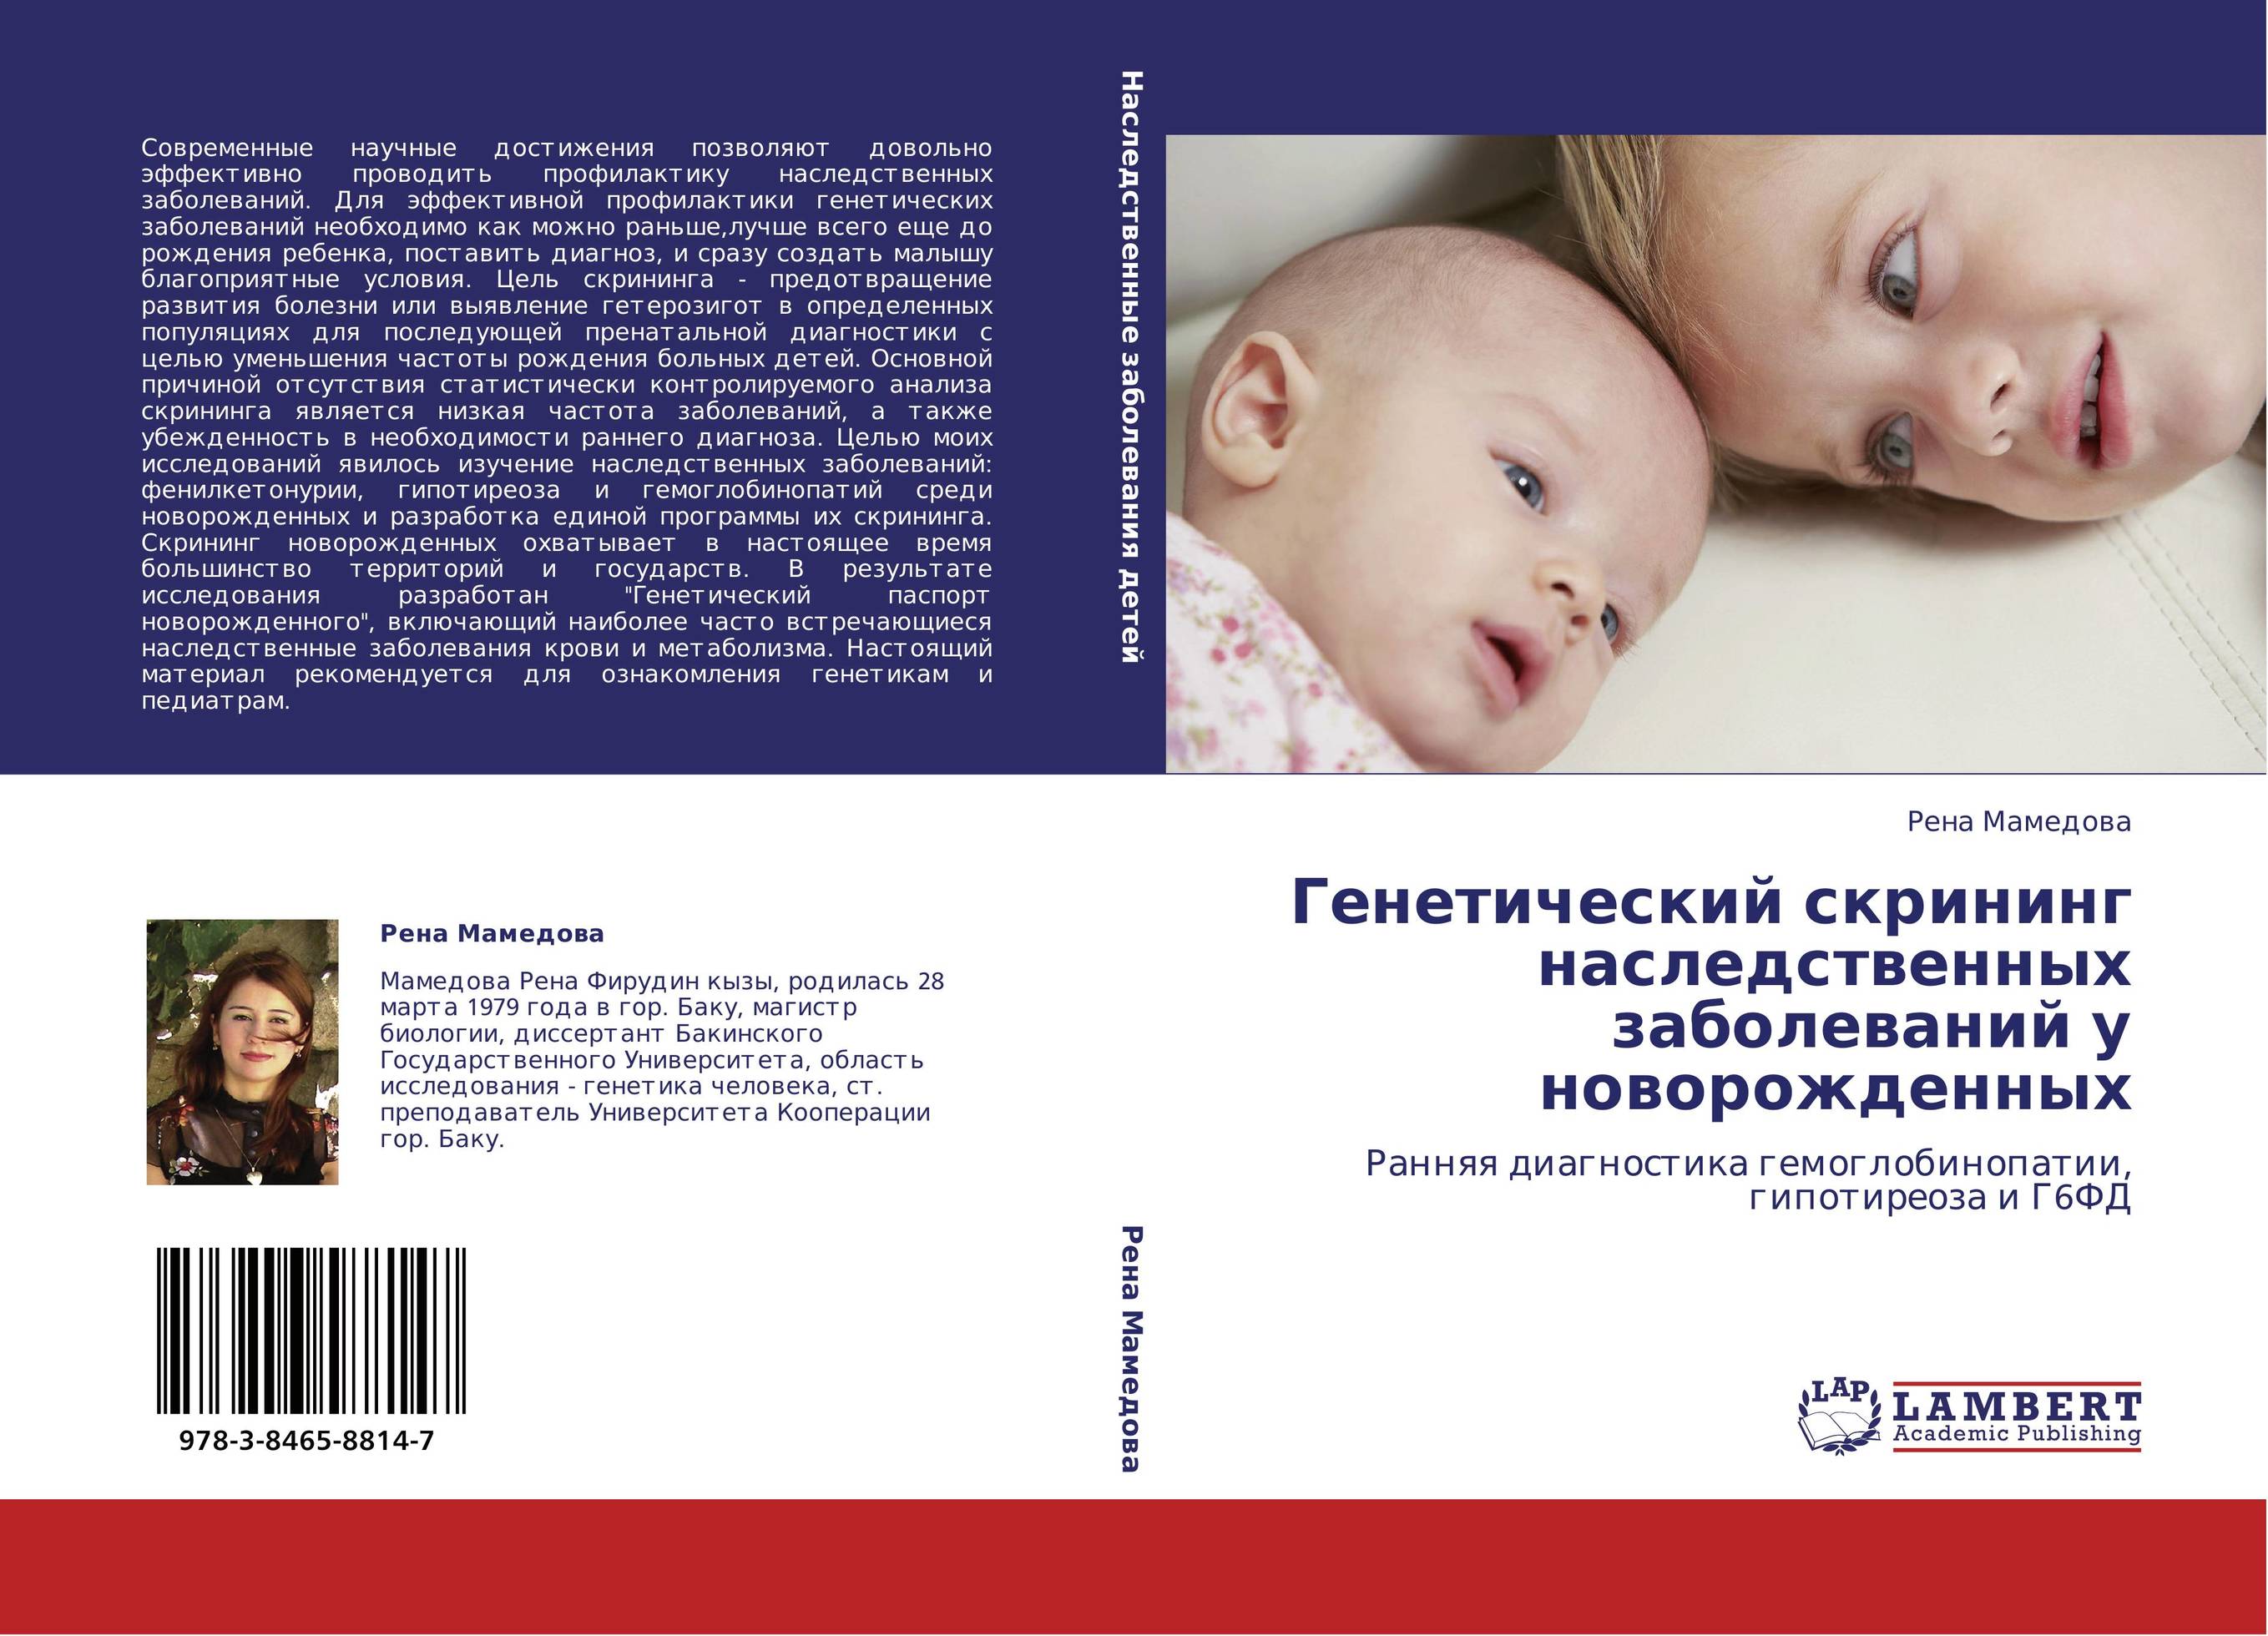 Скрининг на генетические заболевания у новорожденных. Книга генетические болезни детей. Книга по профилактике врожденных заболеваний новорожденных детей.